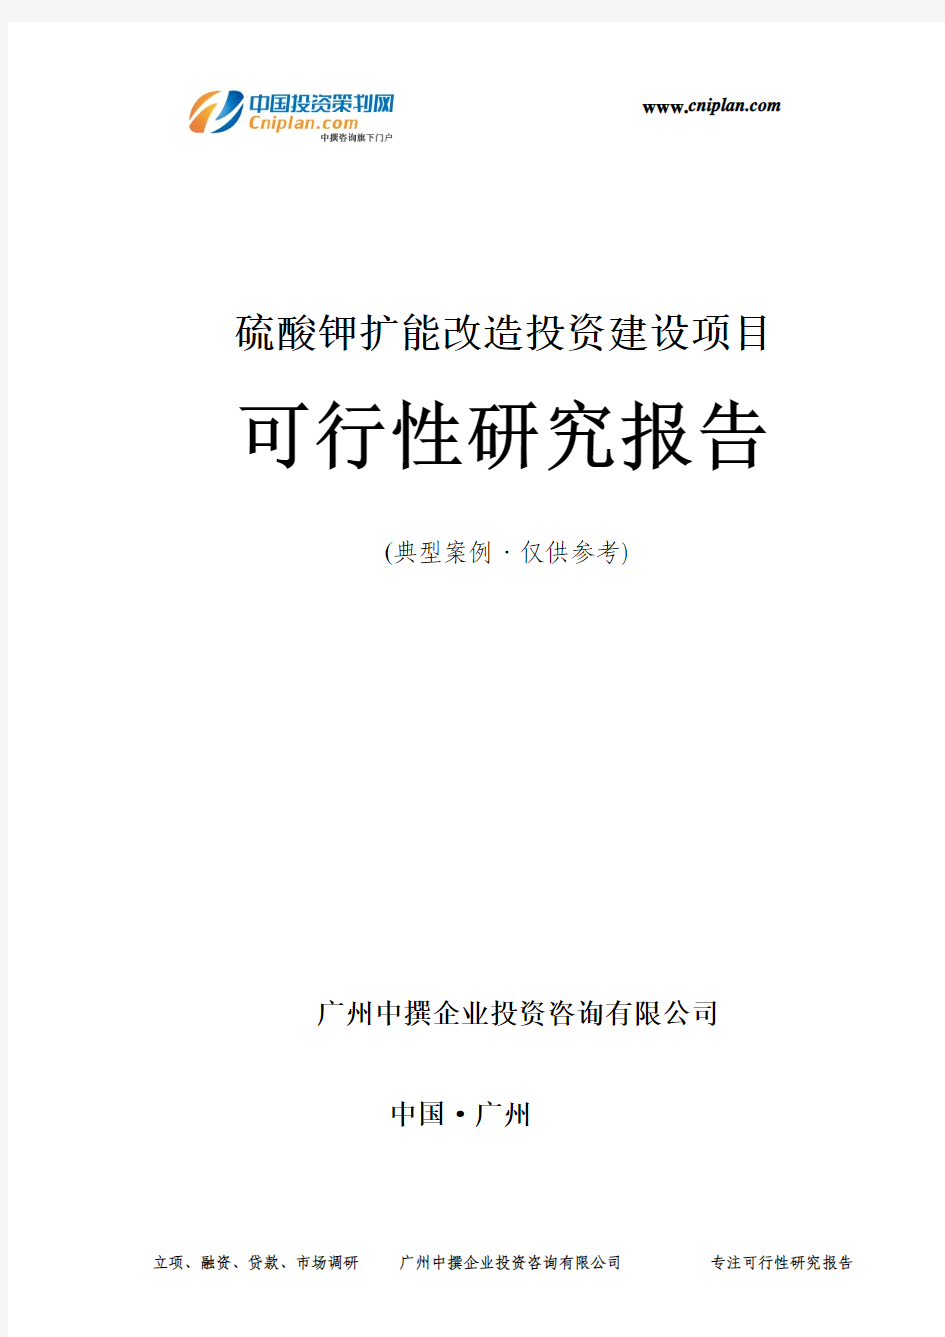 硫酸钾扩能改造投资建设项目可行性研究报告-广州中撰咨询